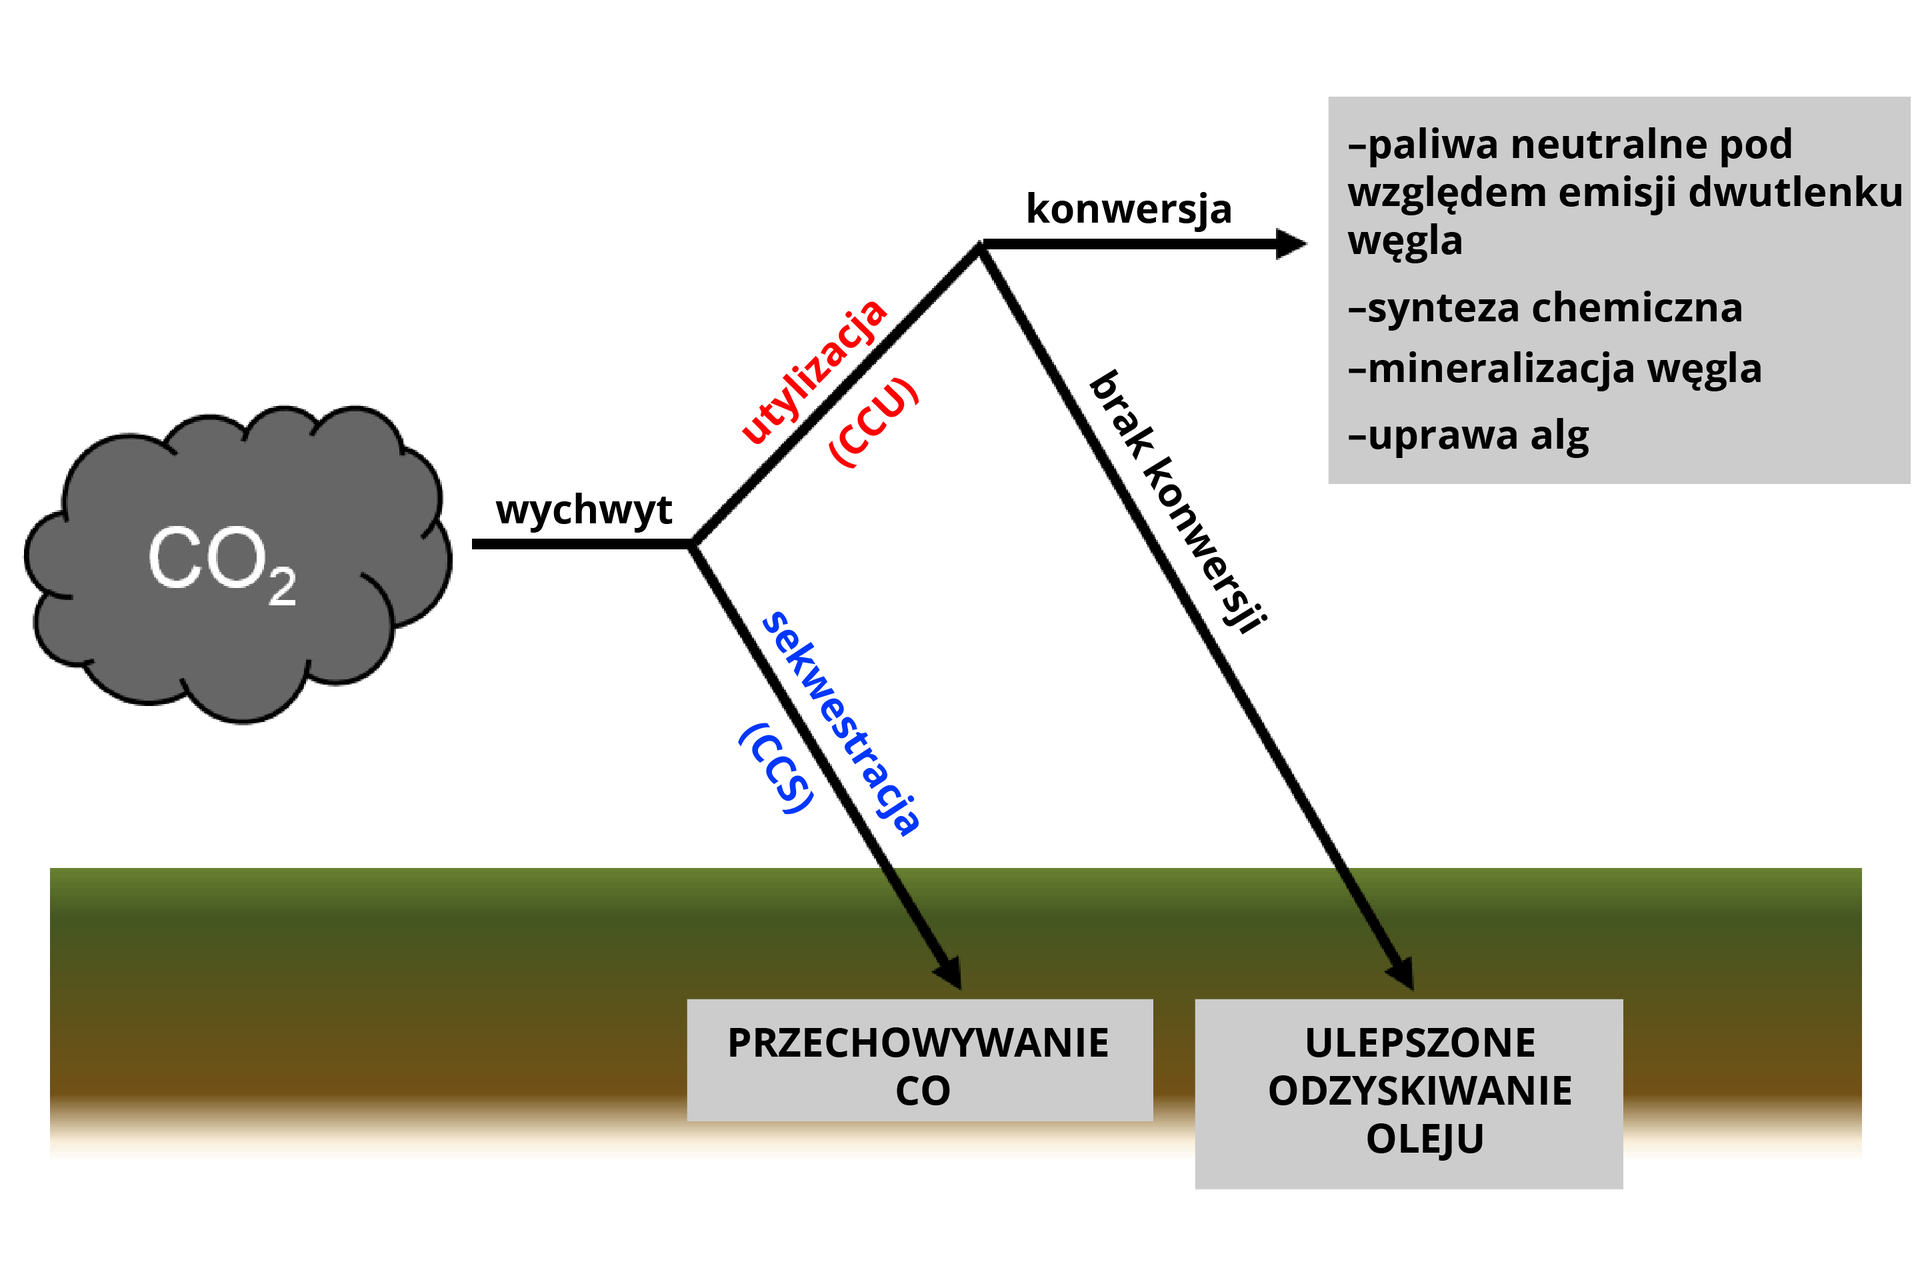 Grafika przedstawia działanie technologii CCU. Od lewej strony znajduje się chmura CO2. Następuje wychwyt. Może zostać poddany sekwestracji CCS, w wyniku której następuje przechowywanie CO. Lub może zostać poddany utylizacji CCU. Gdy nie zostanie poddany konwersji, to następuje ulepszone odzyskiwanie oleju. Gdy zostanie poddany konwersji, to powstają paliwa neutralne pod względem emisji dwutlenku węgla, następuje synteza chemiczna, mineralizacja węgla oraz uprawa alg.